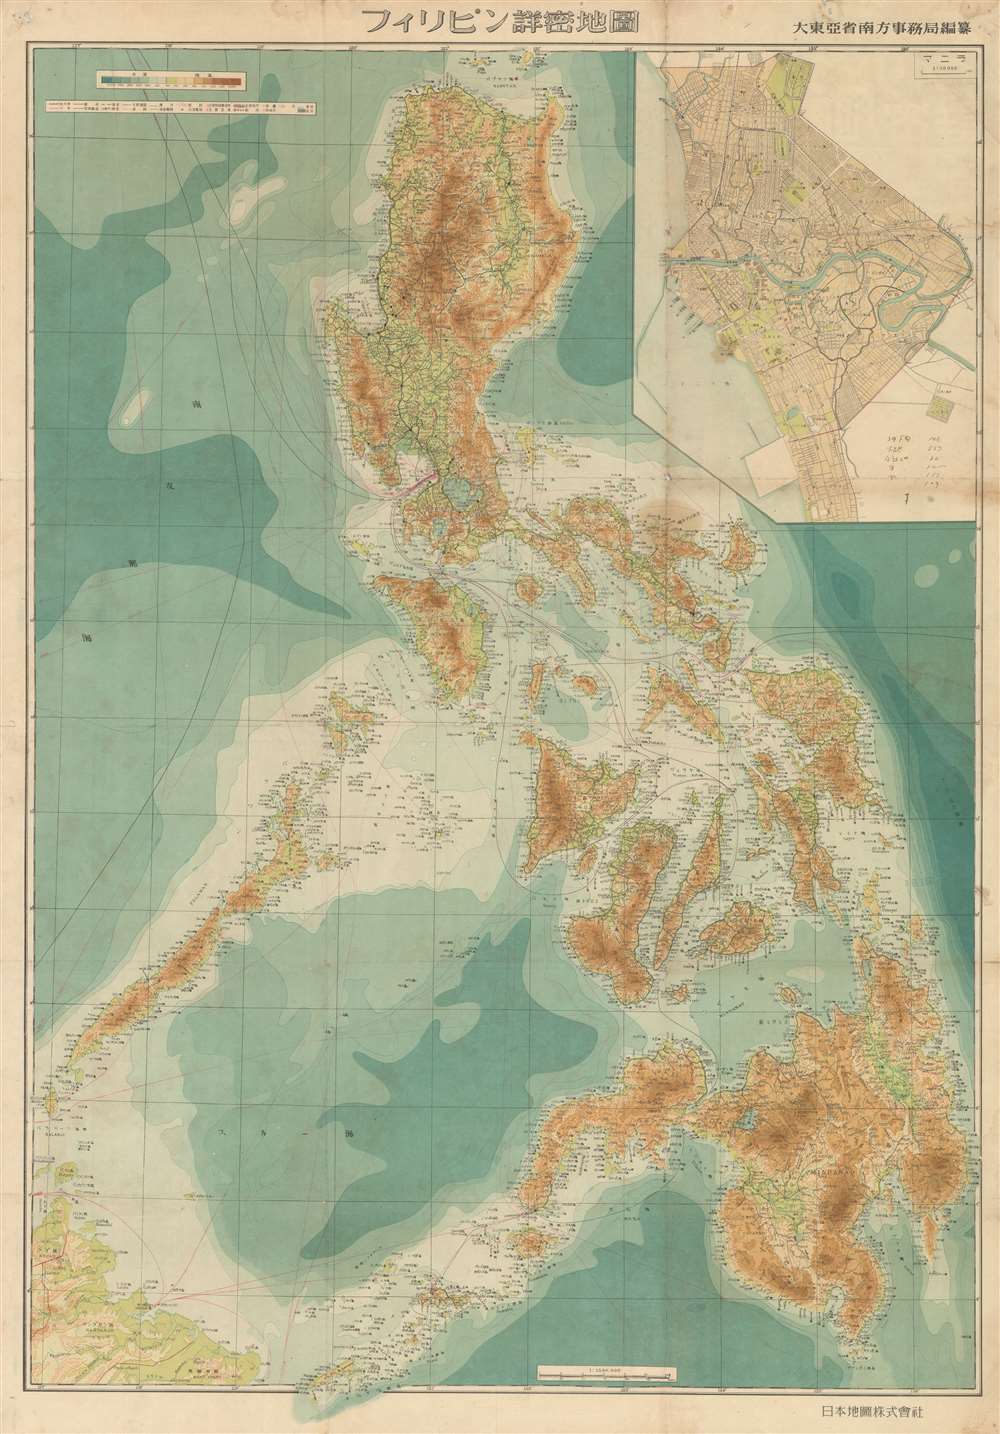 フィリピン詳密地圖 / Detailed Map of the Philippines. / Firipin shomitsu chizu. - Main View